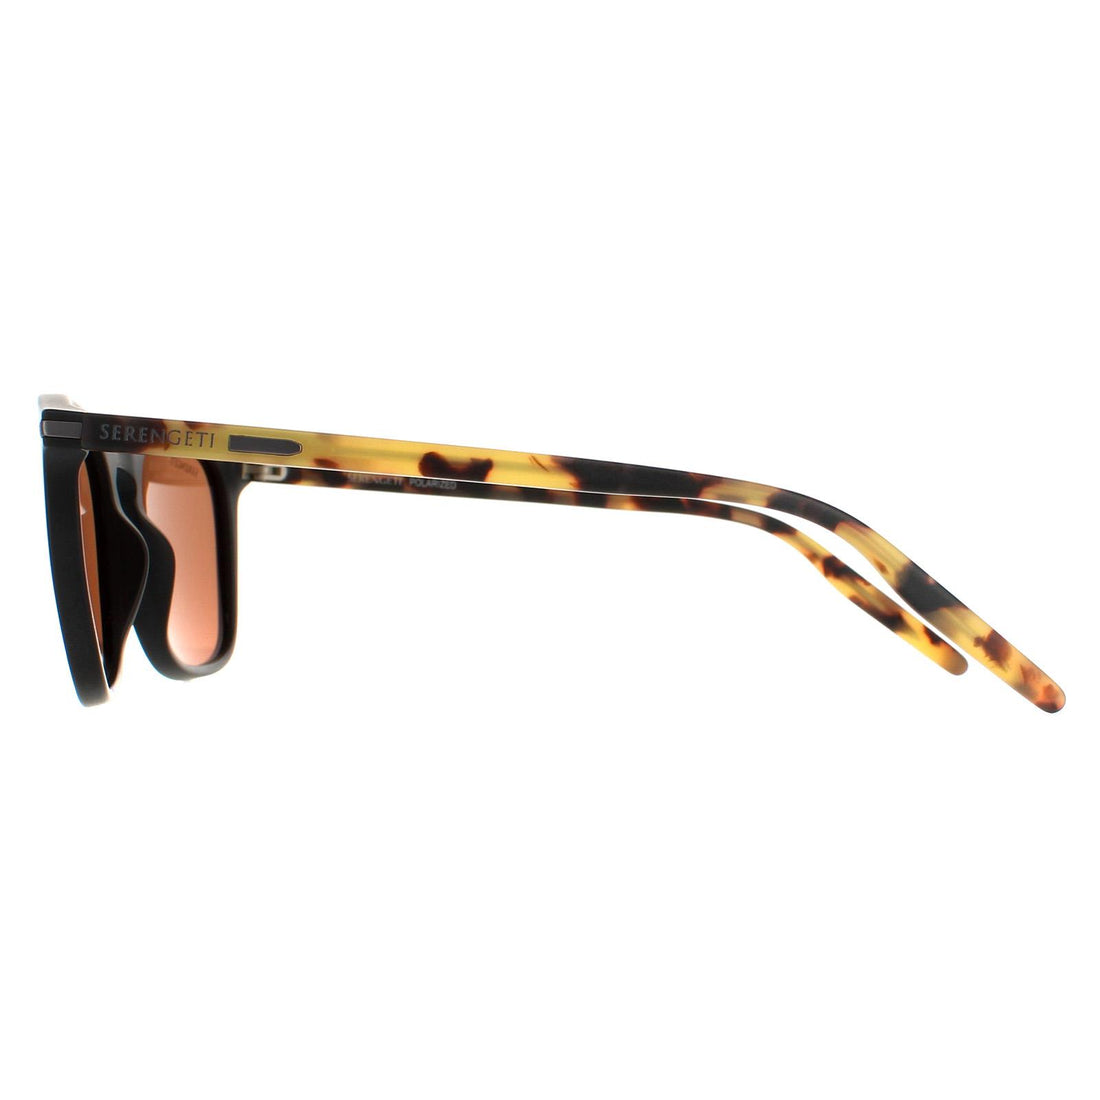 Serengeti Delio Sunglasses